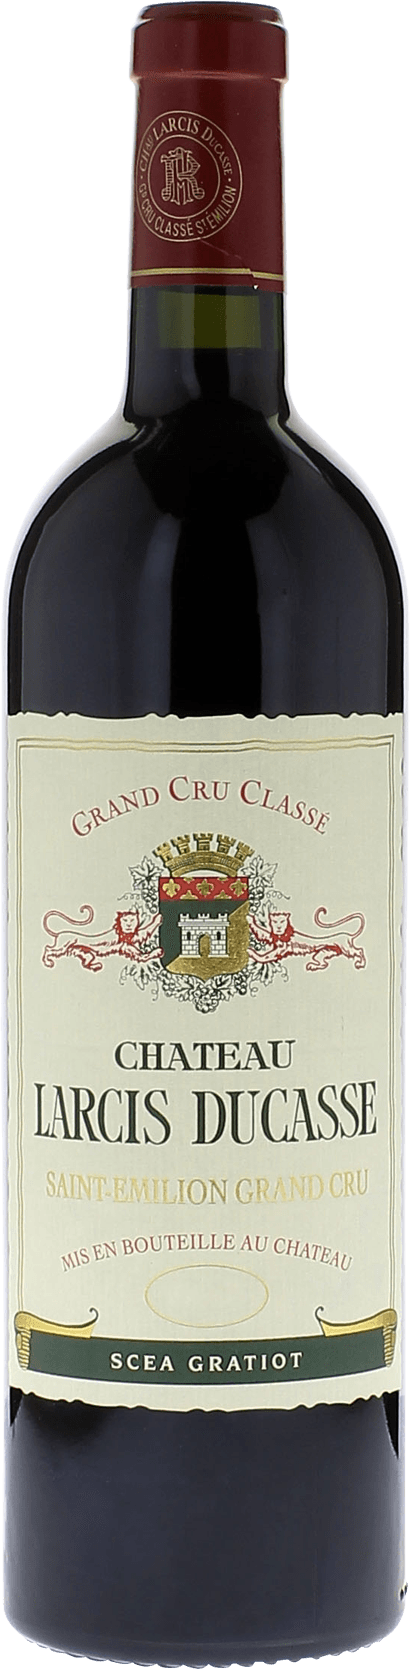 Larcis ducasse 2000 Grand cru class Saint-Emilion, Bordeaux rouge